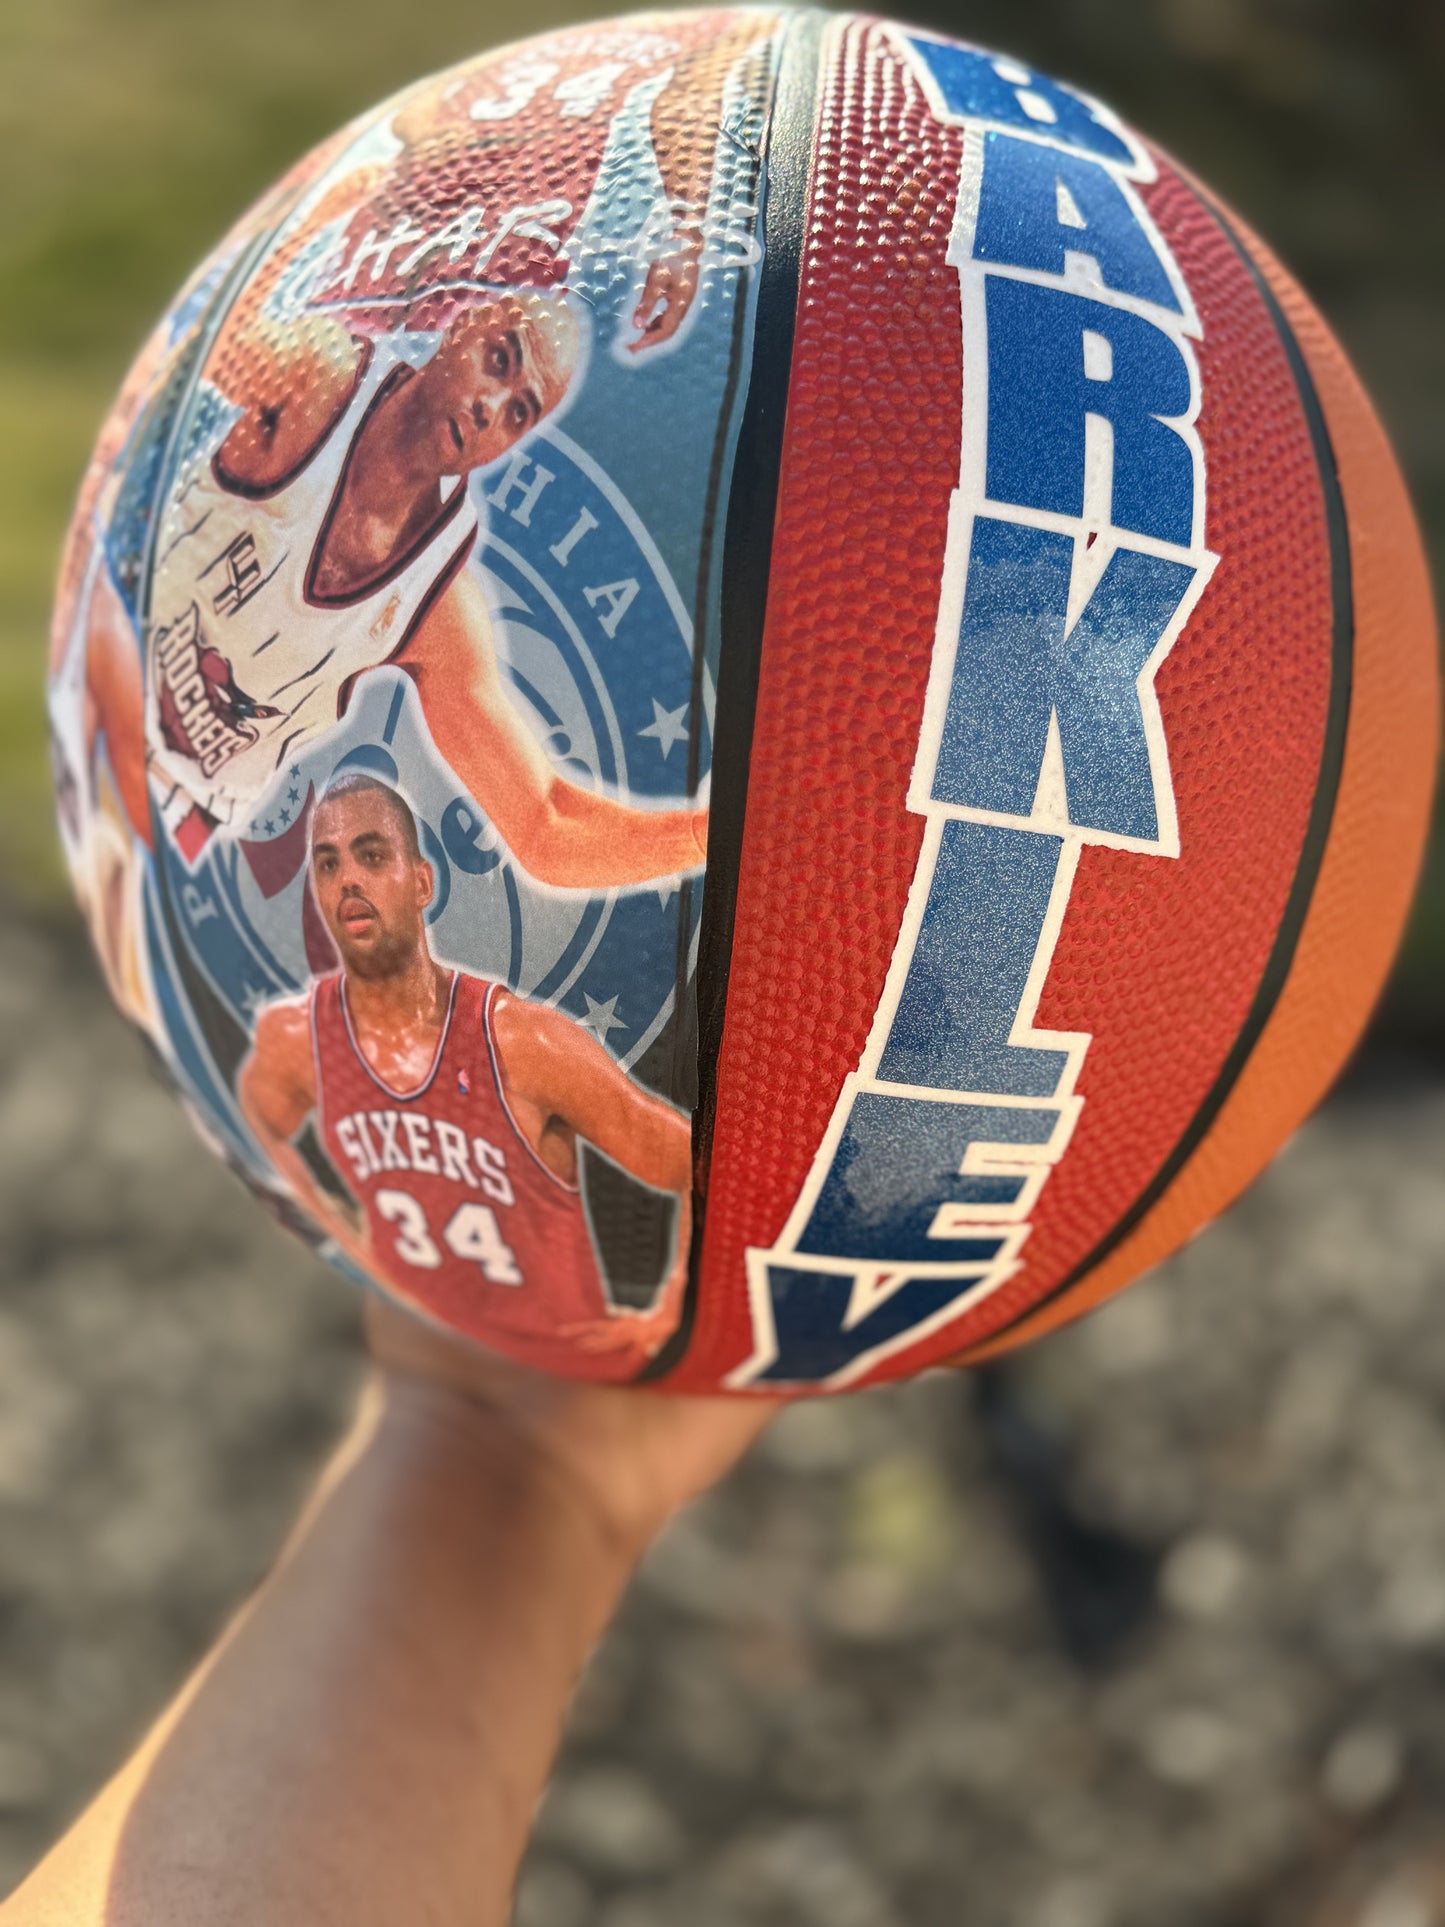 Custom Basketball with photos